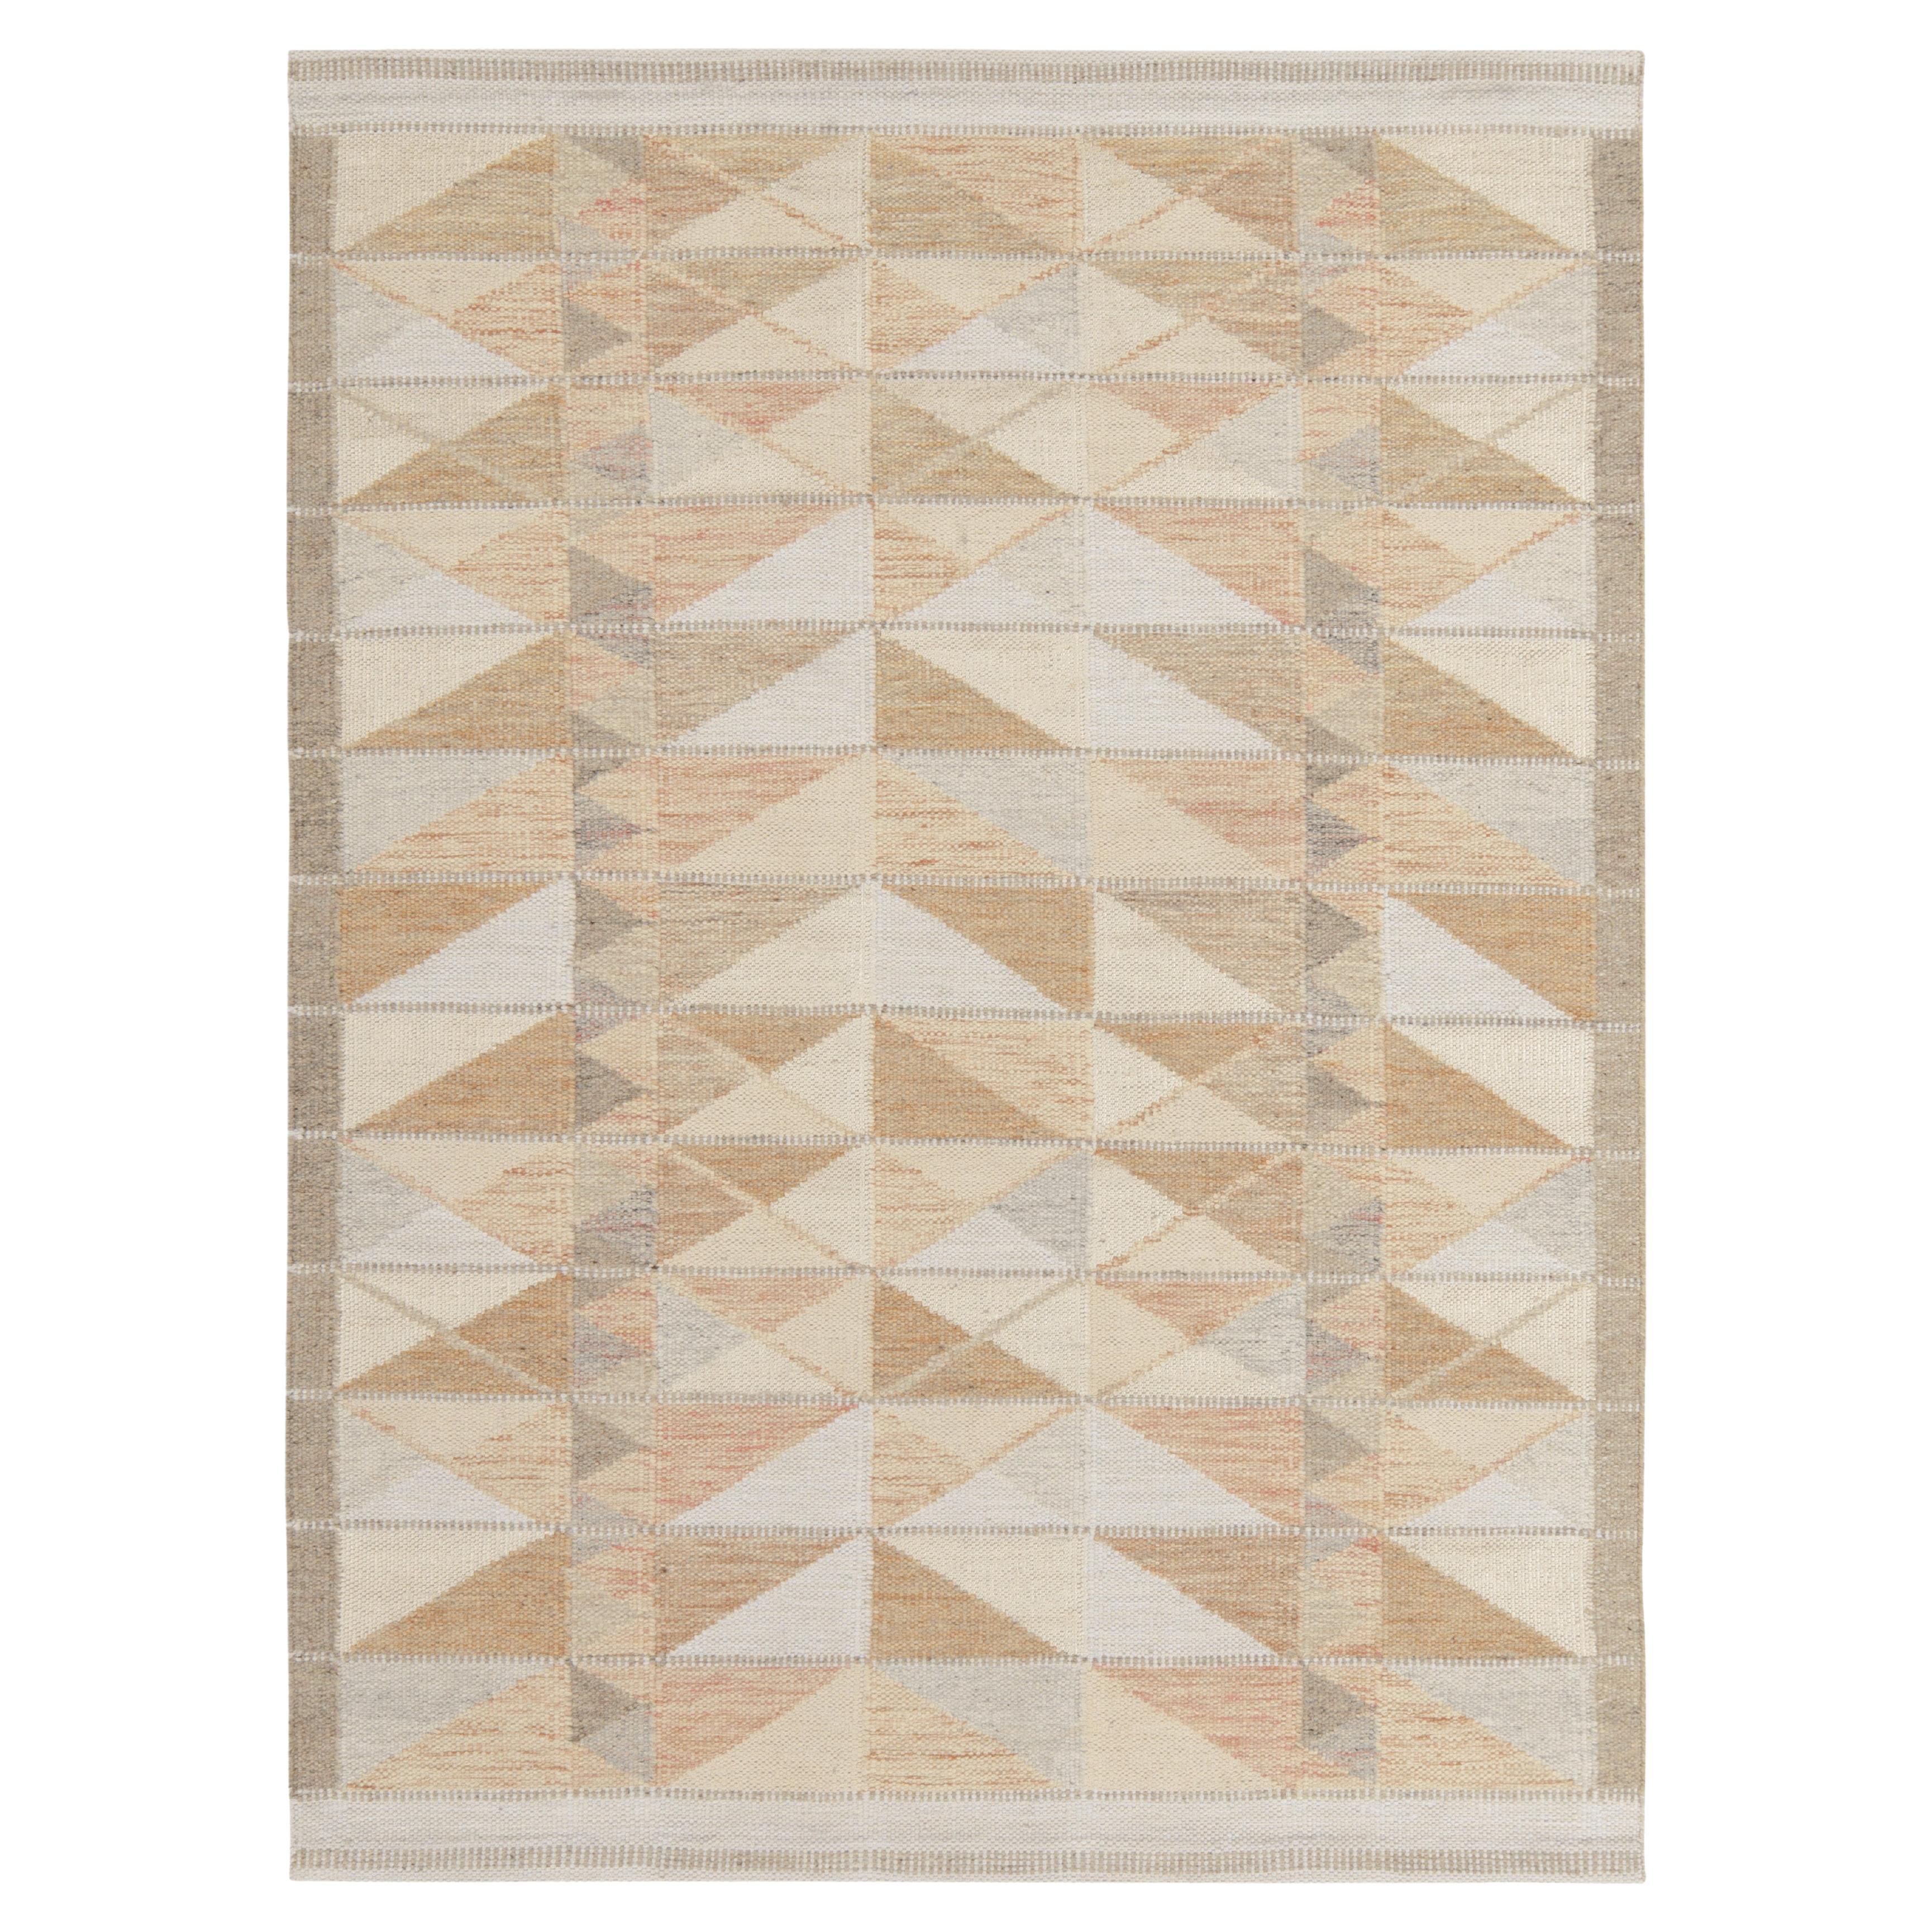 Teppich & Kelim-Teppich im skandinavischen Stil, maßgefertigter Kelim-Teppich in Beige, Weiß Geometrie